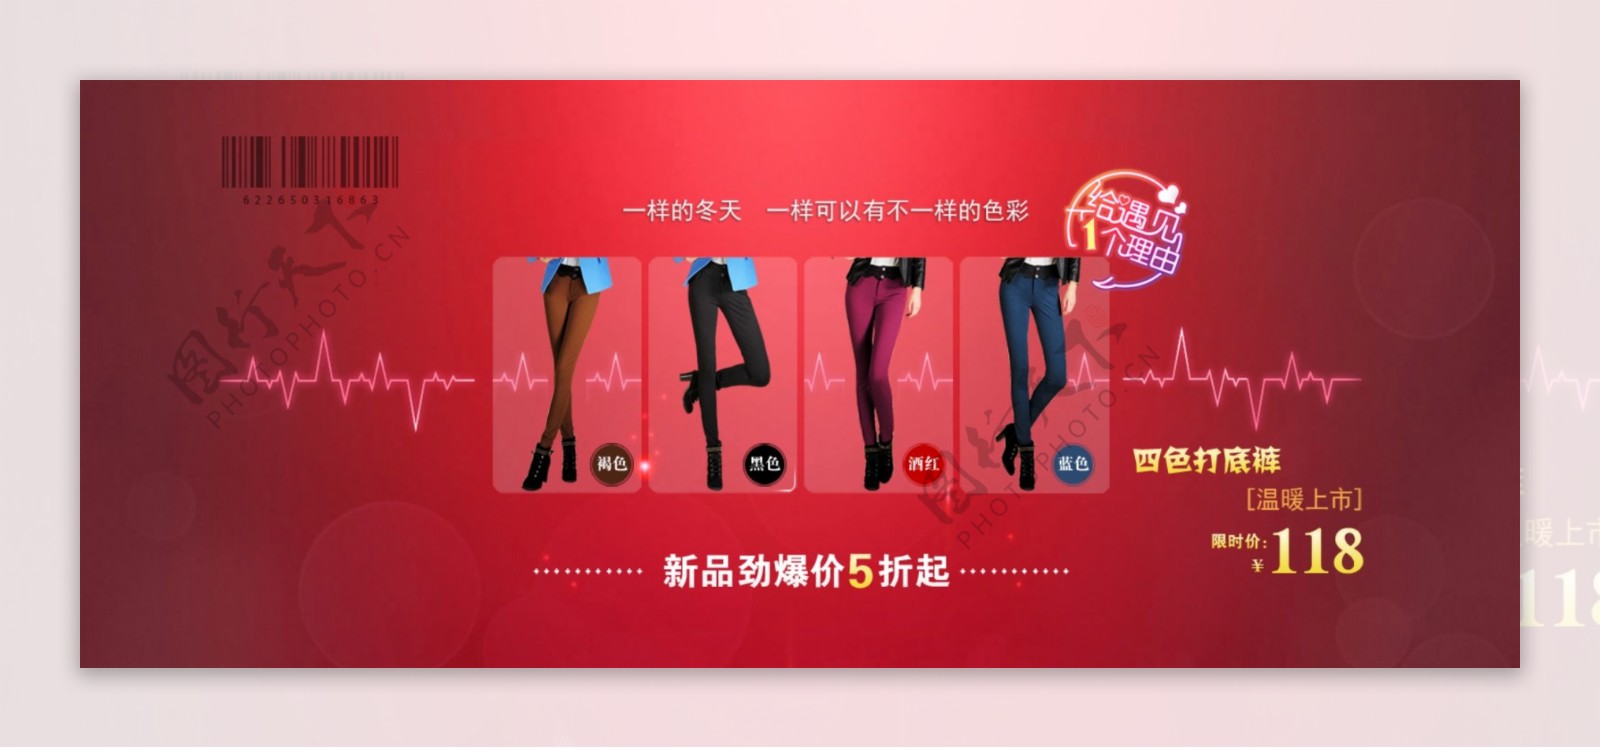 时尚女裤店铺红色背景展示psd海报